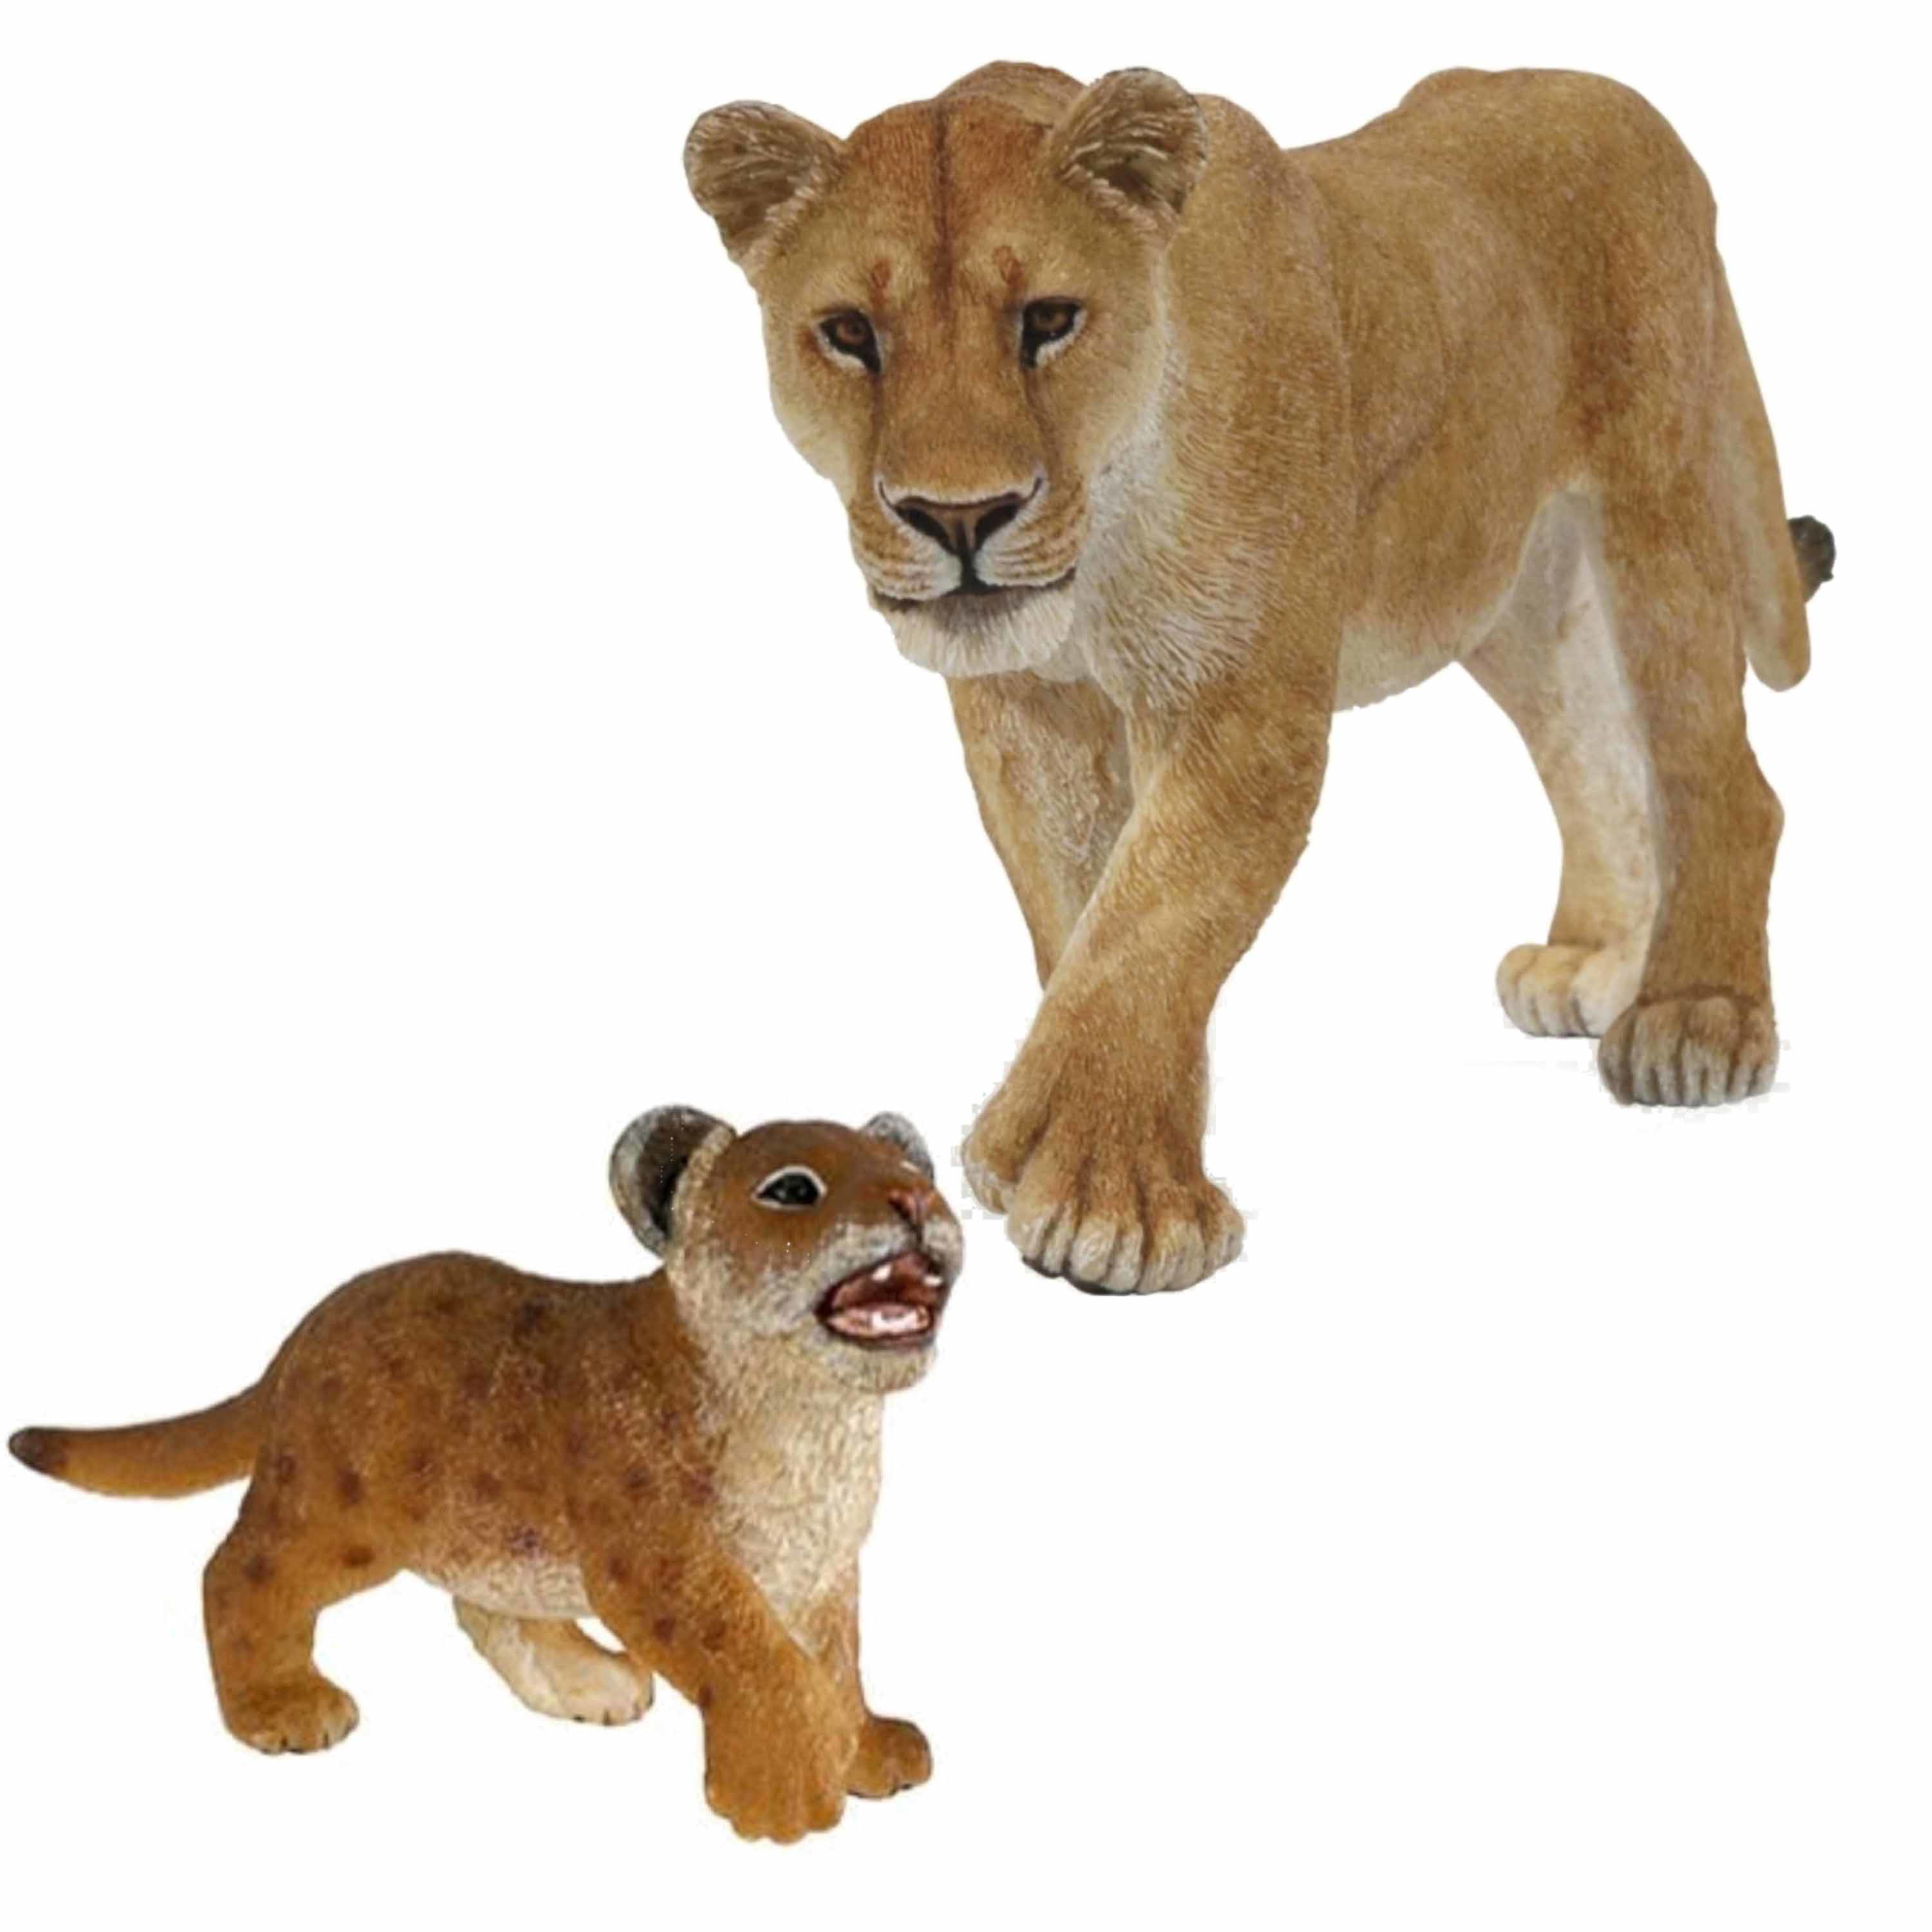 Plastic speelgoed dieren figuren setje leeuwen familie van moeder en kind